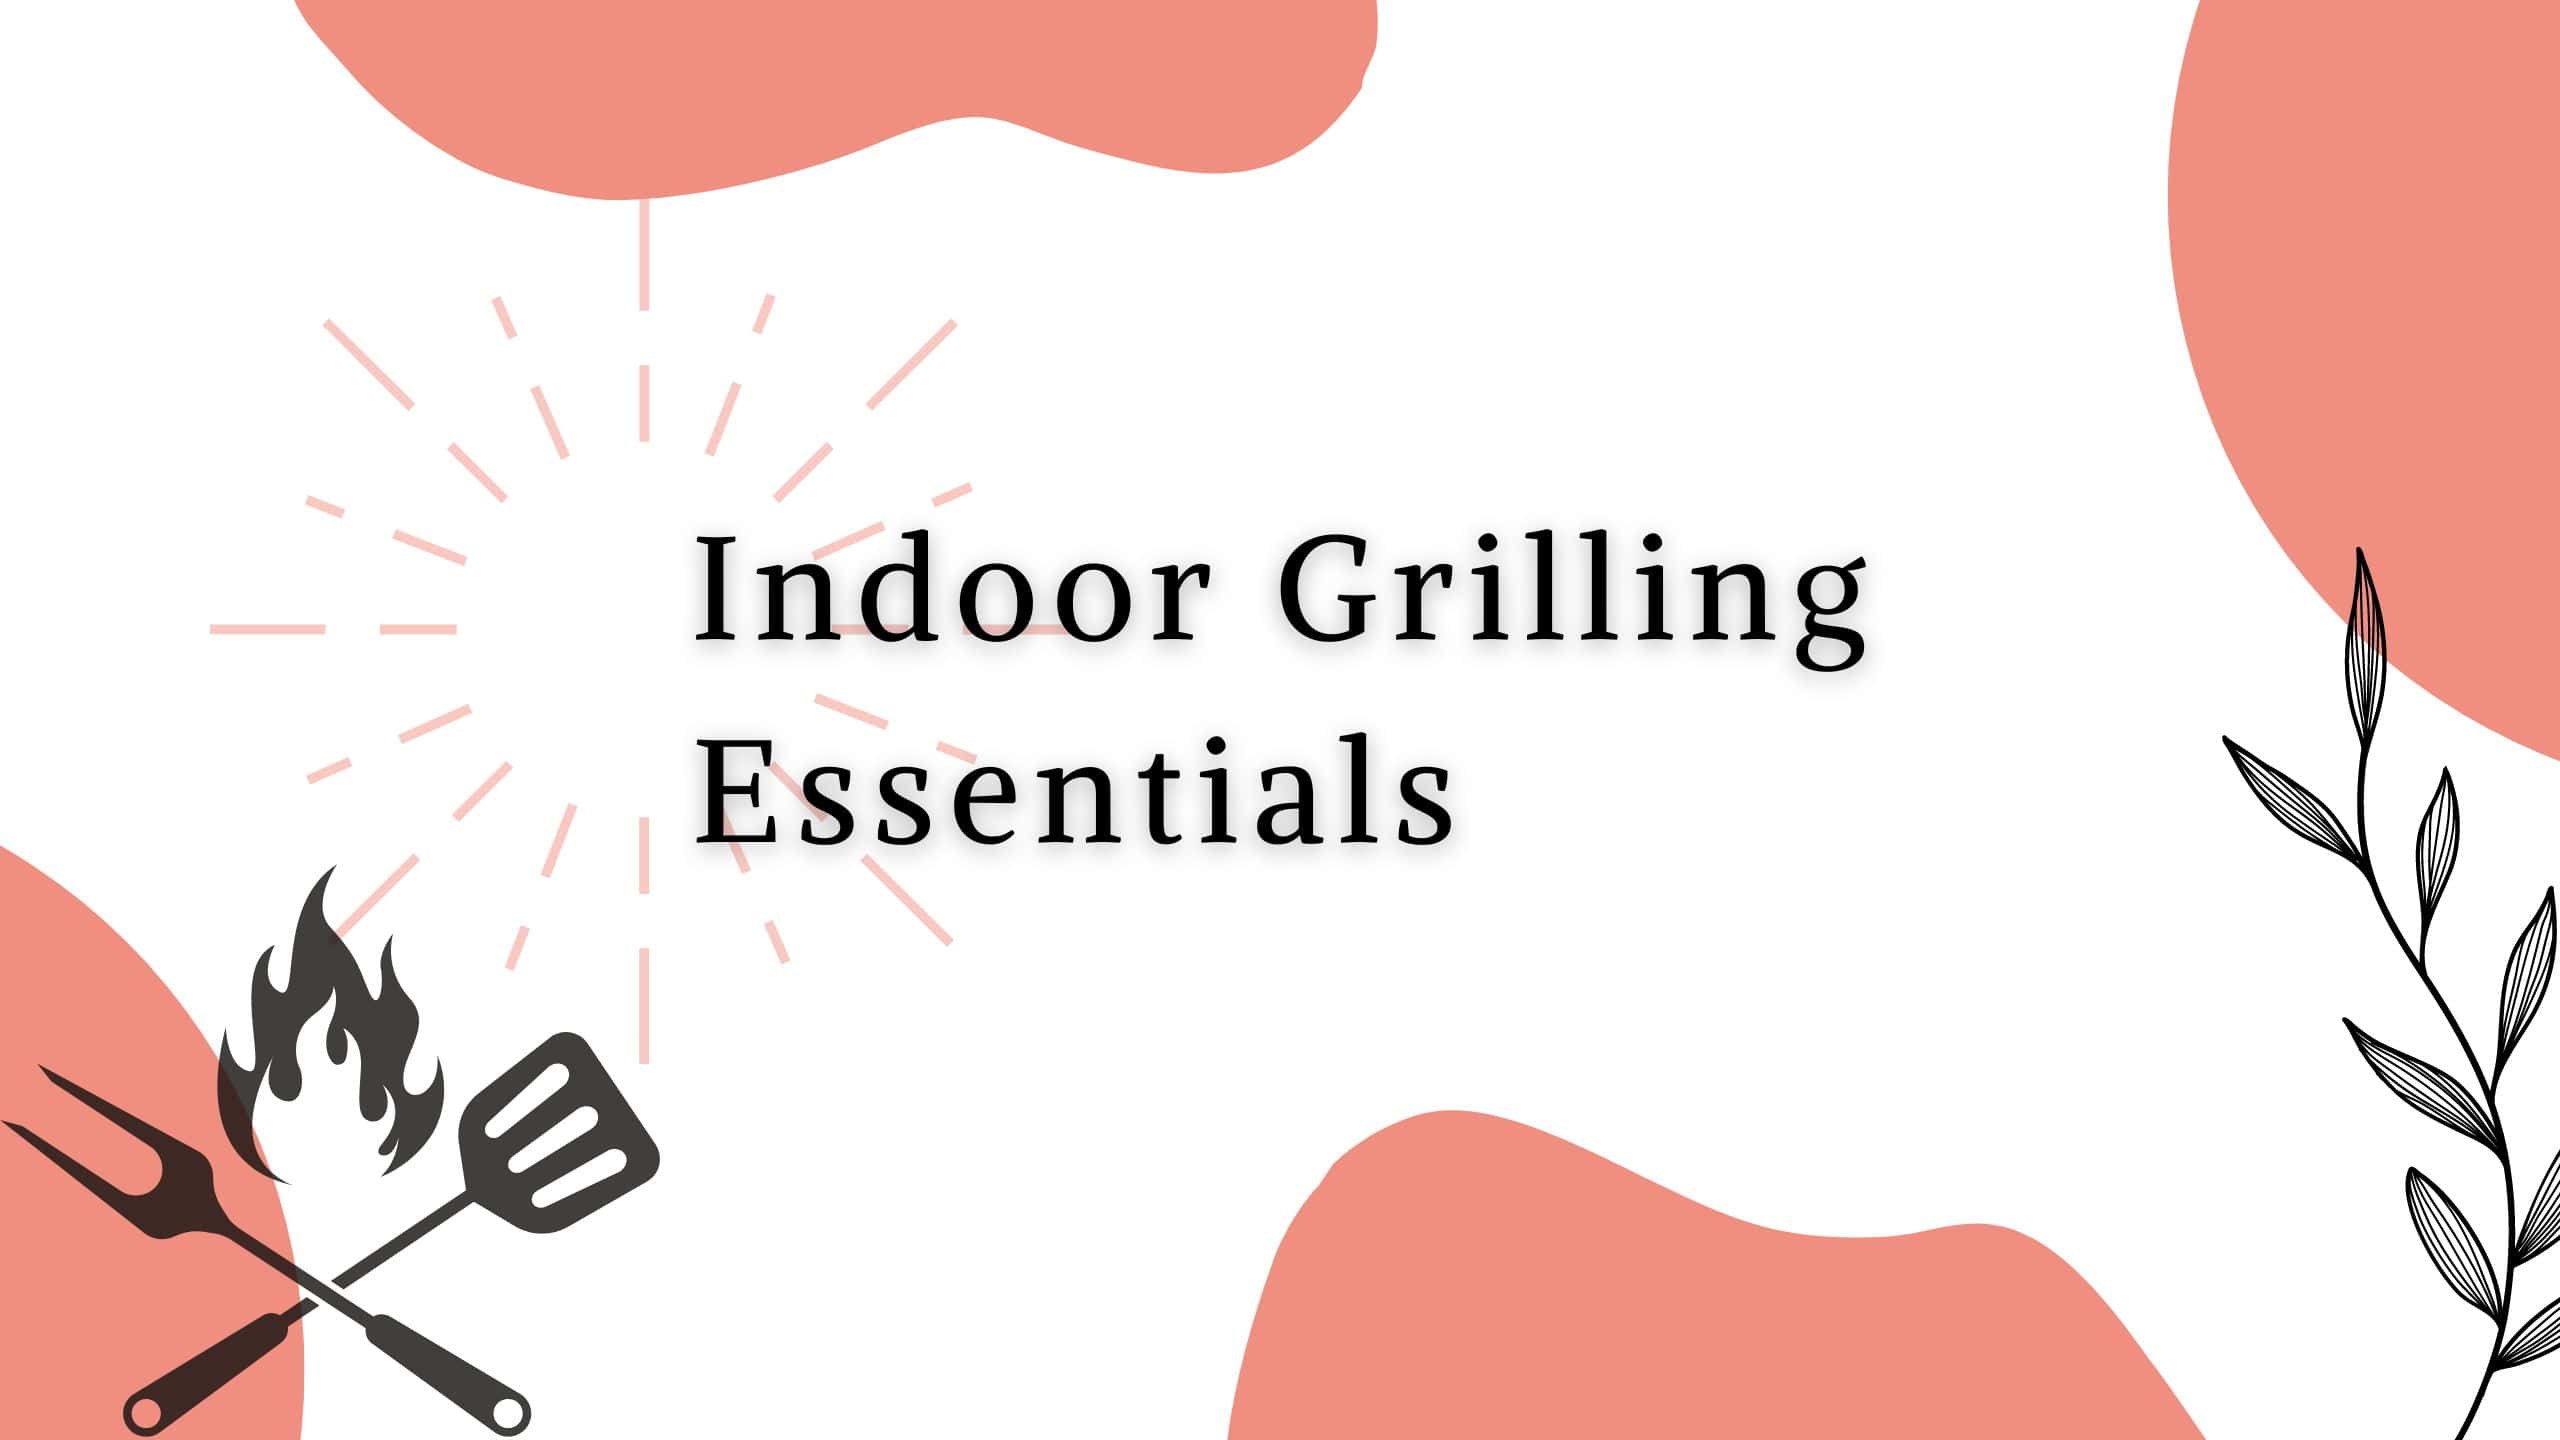 Indoor Grilling Essentials Title